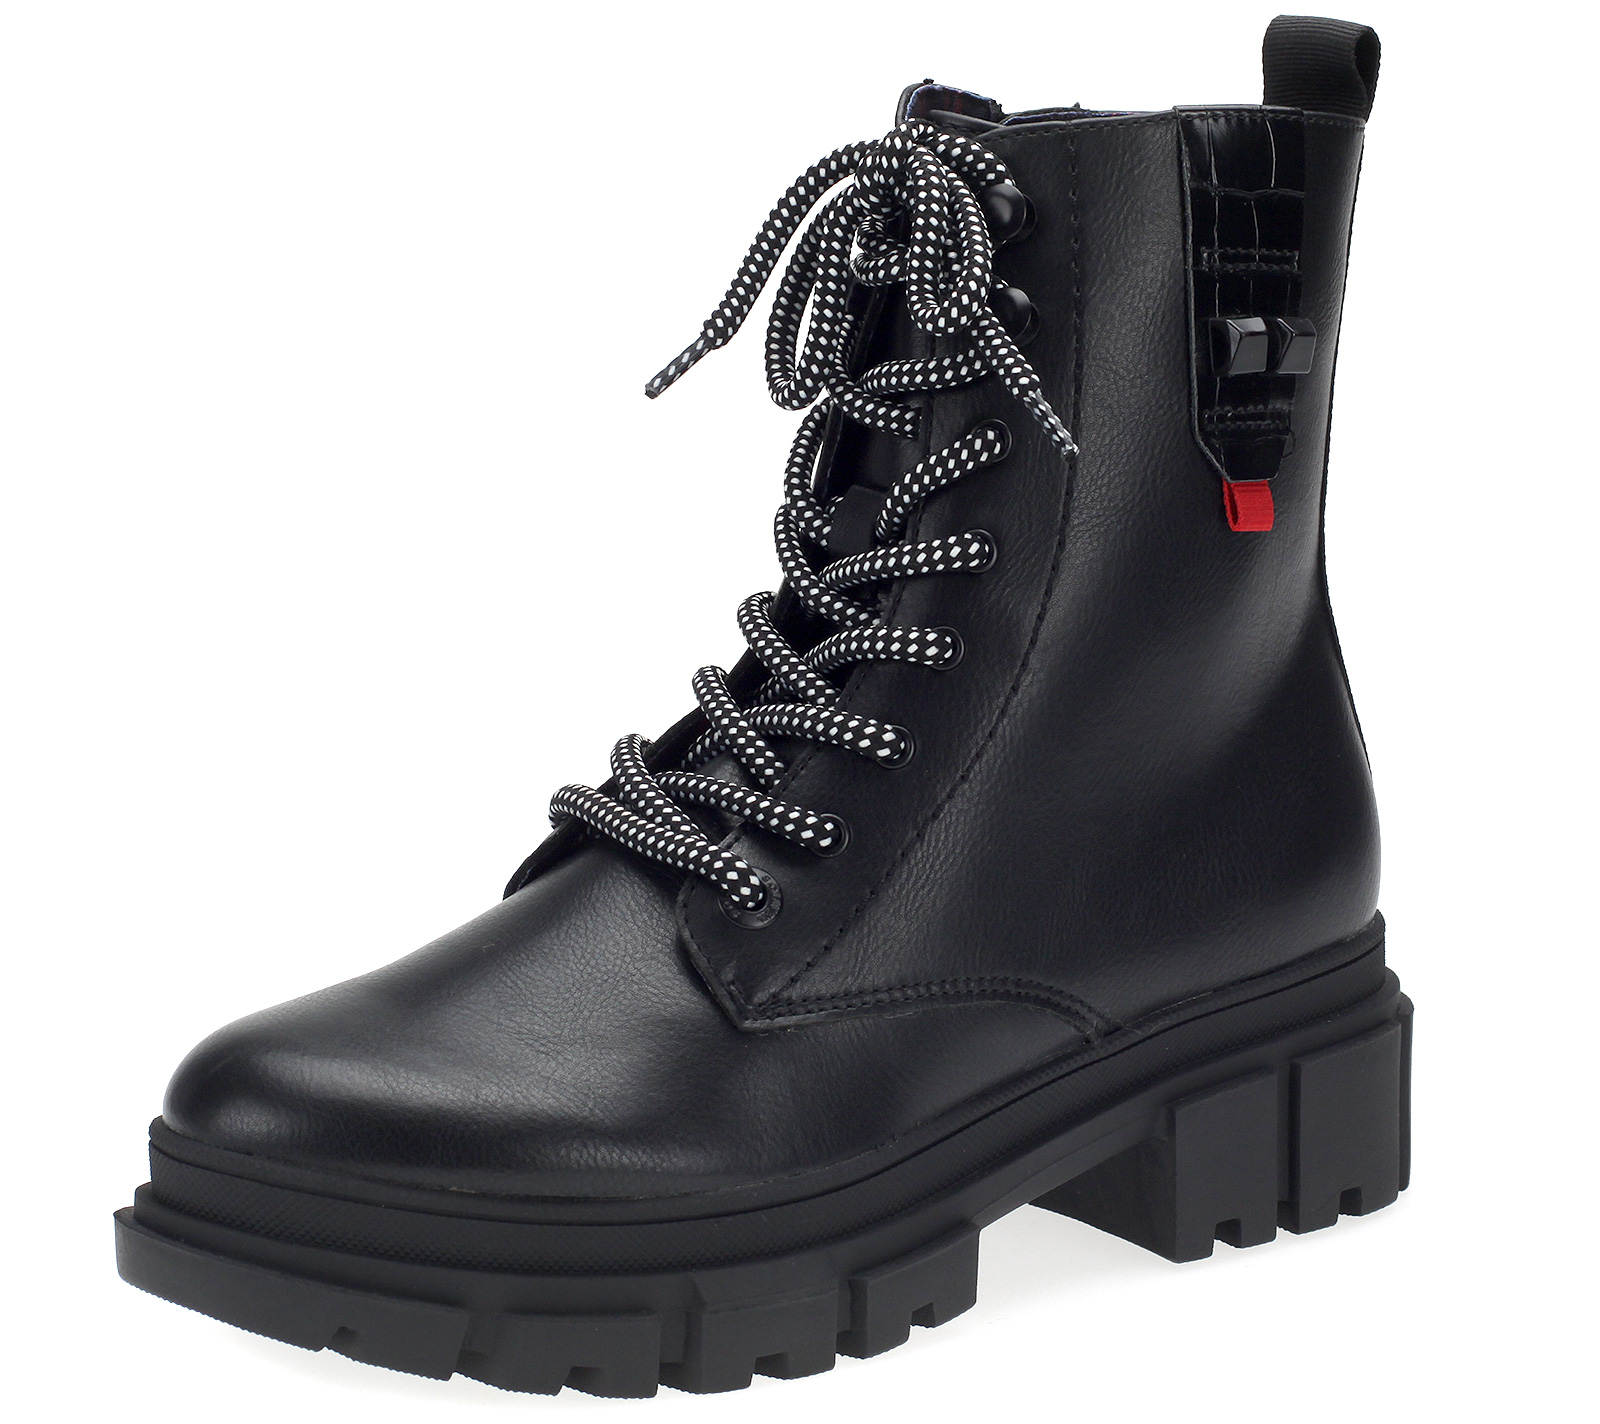 Damen Stiefeletten Combat Schnür-Boots Schuhe Schwarz 5-25214-25-001-black